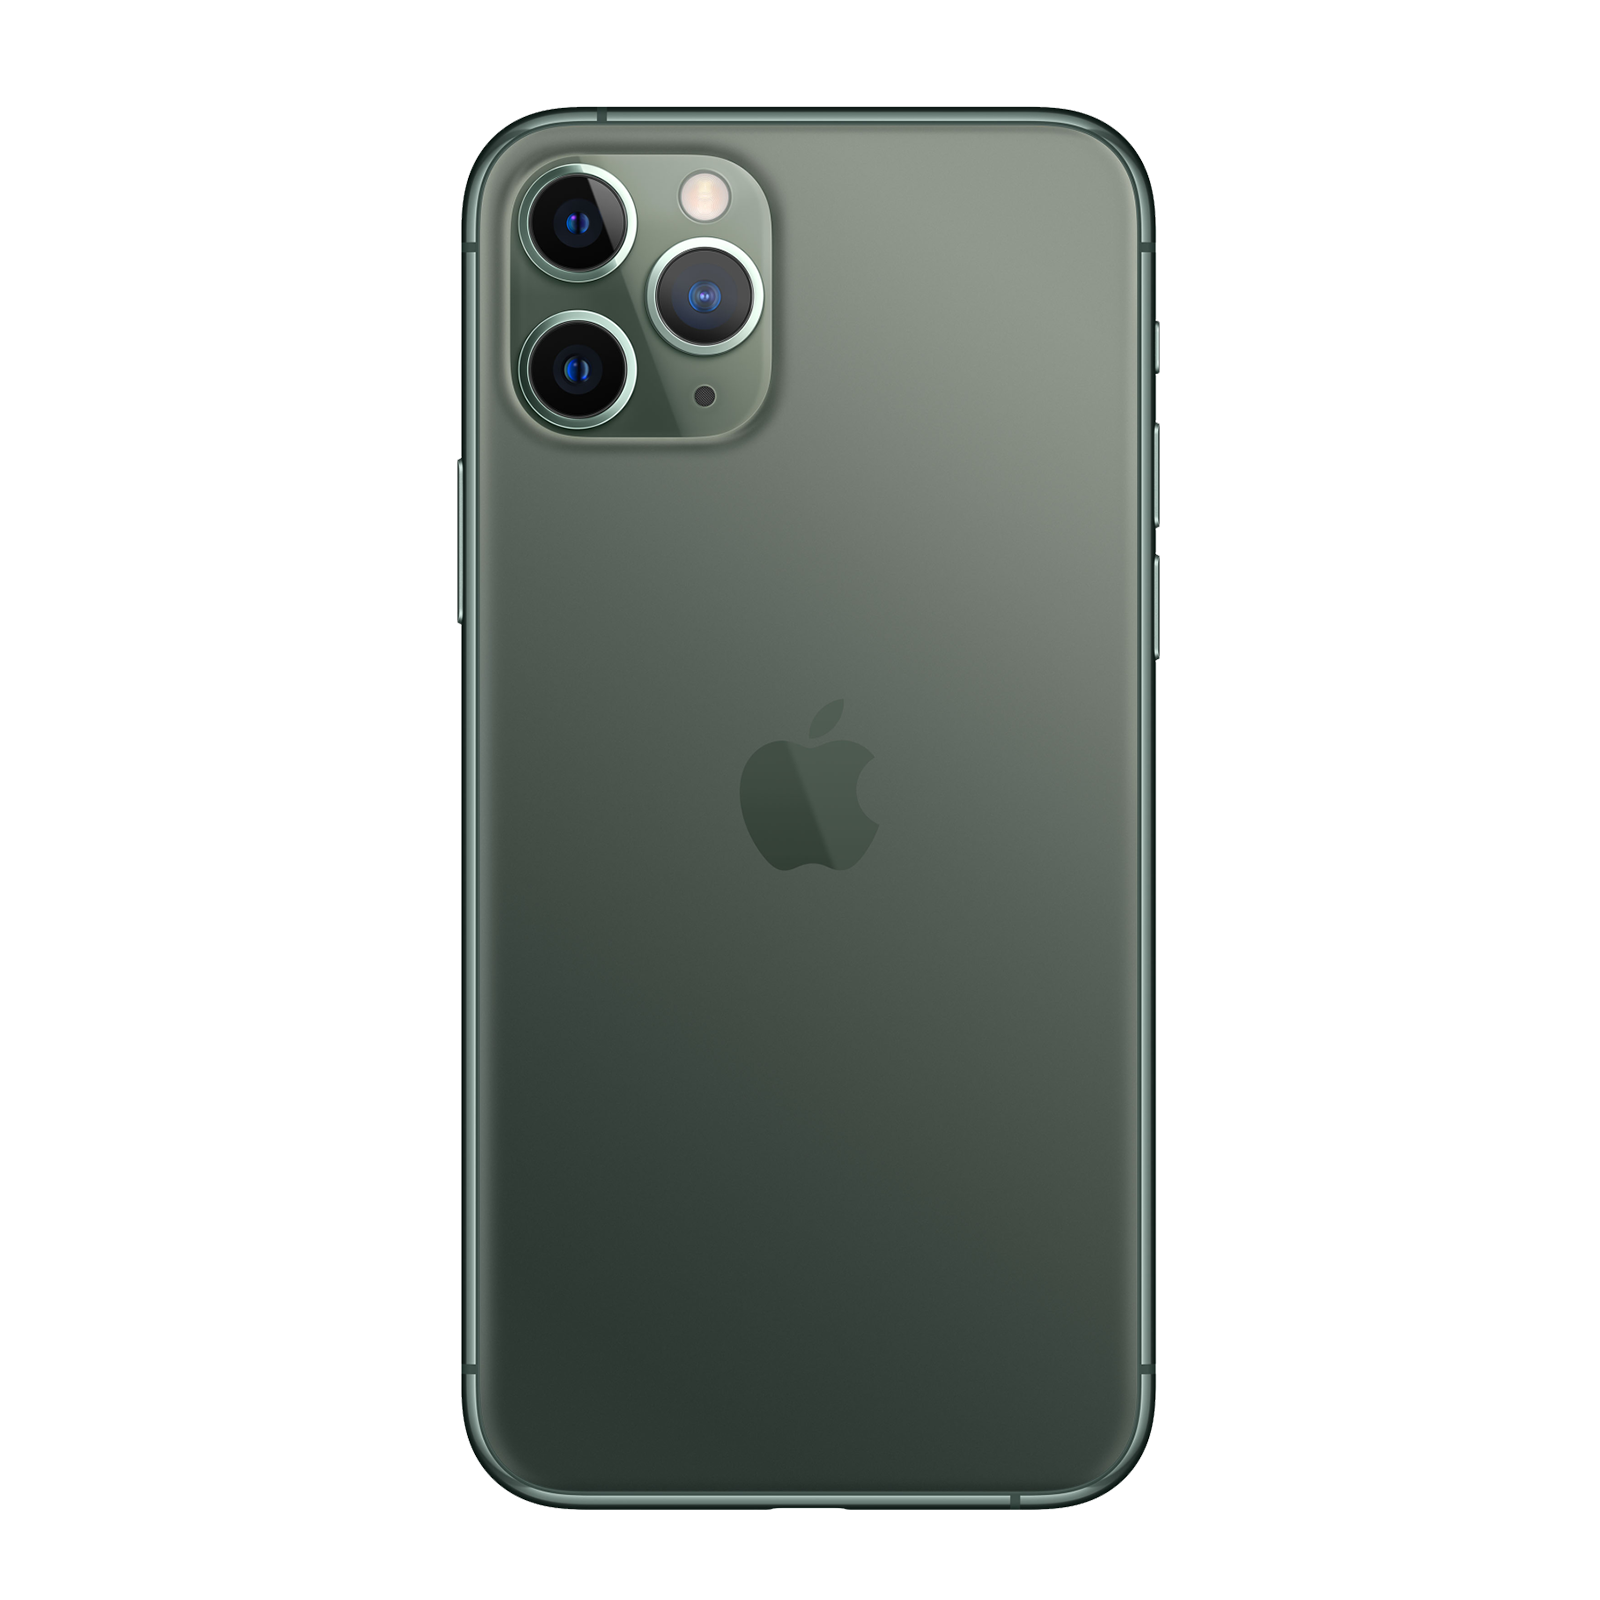 iPhone 11 Pro Max 64 Go - Vert Nuit - Débloqué - Très Bon État